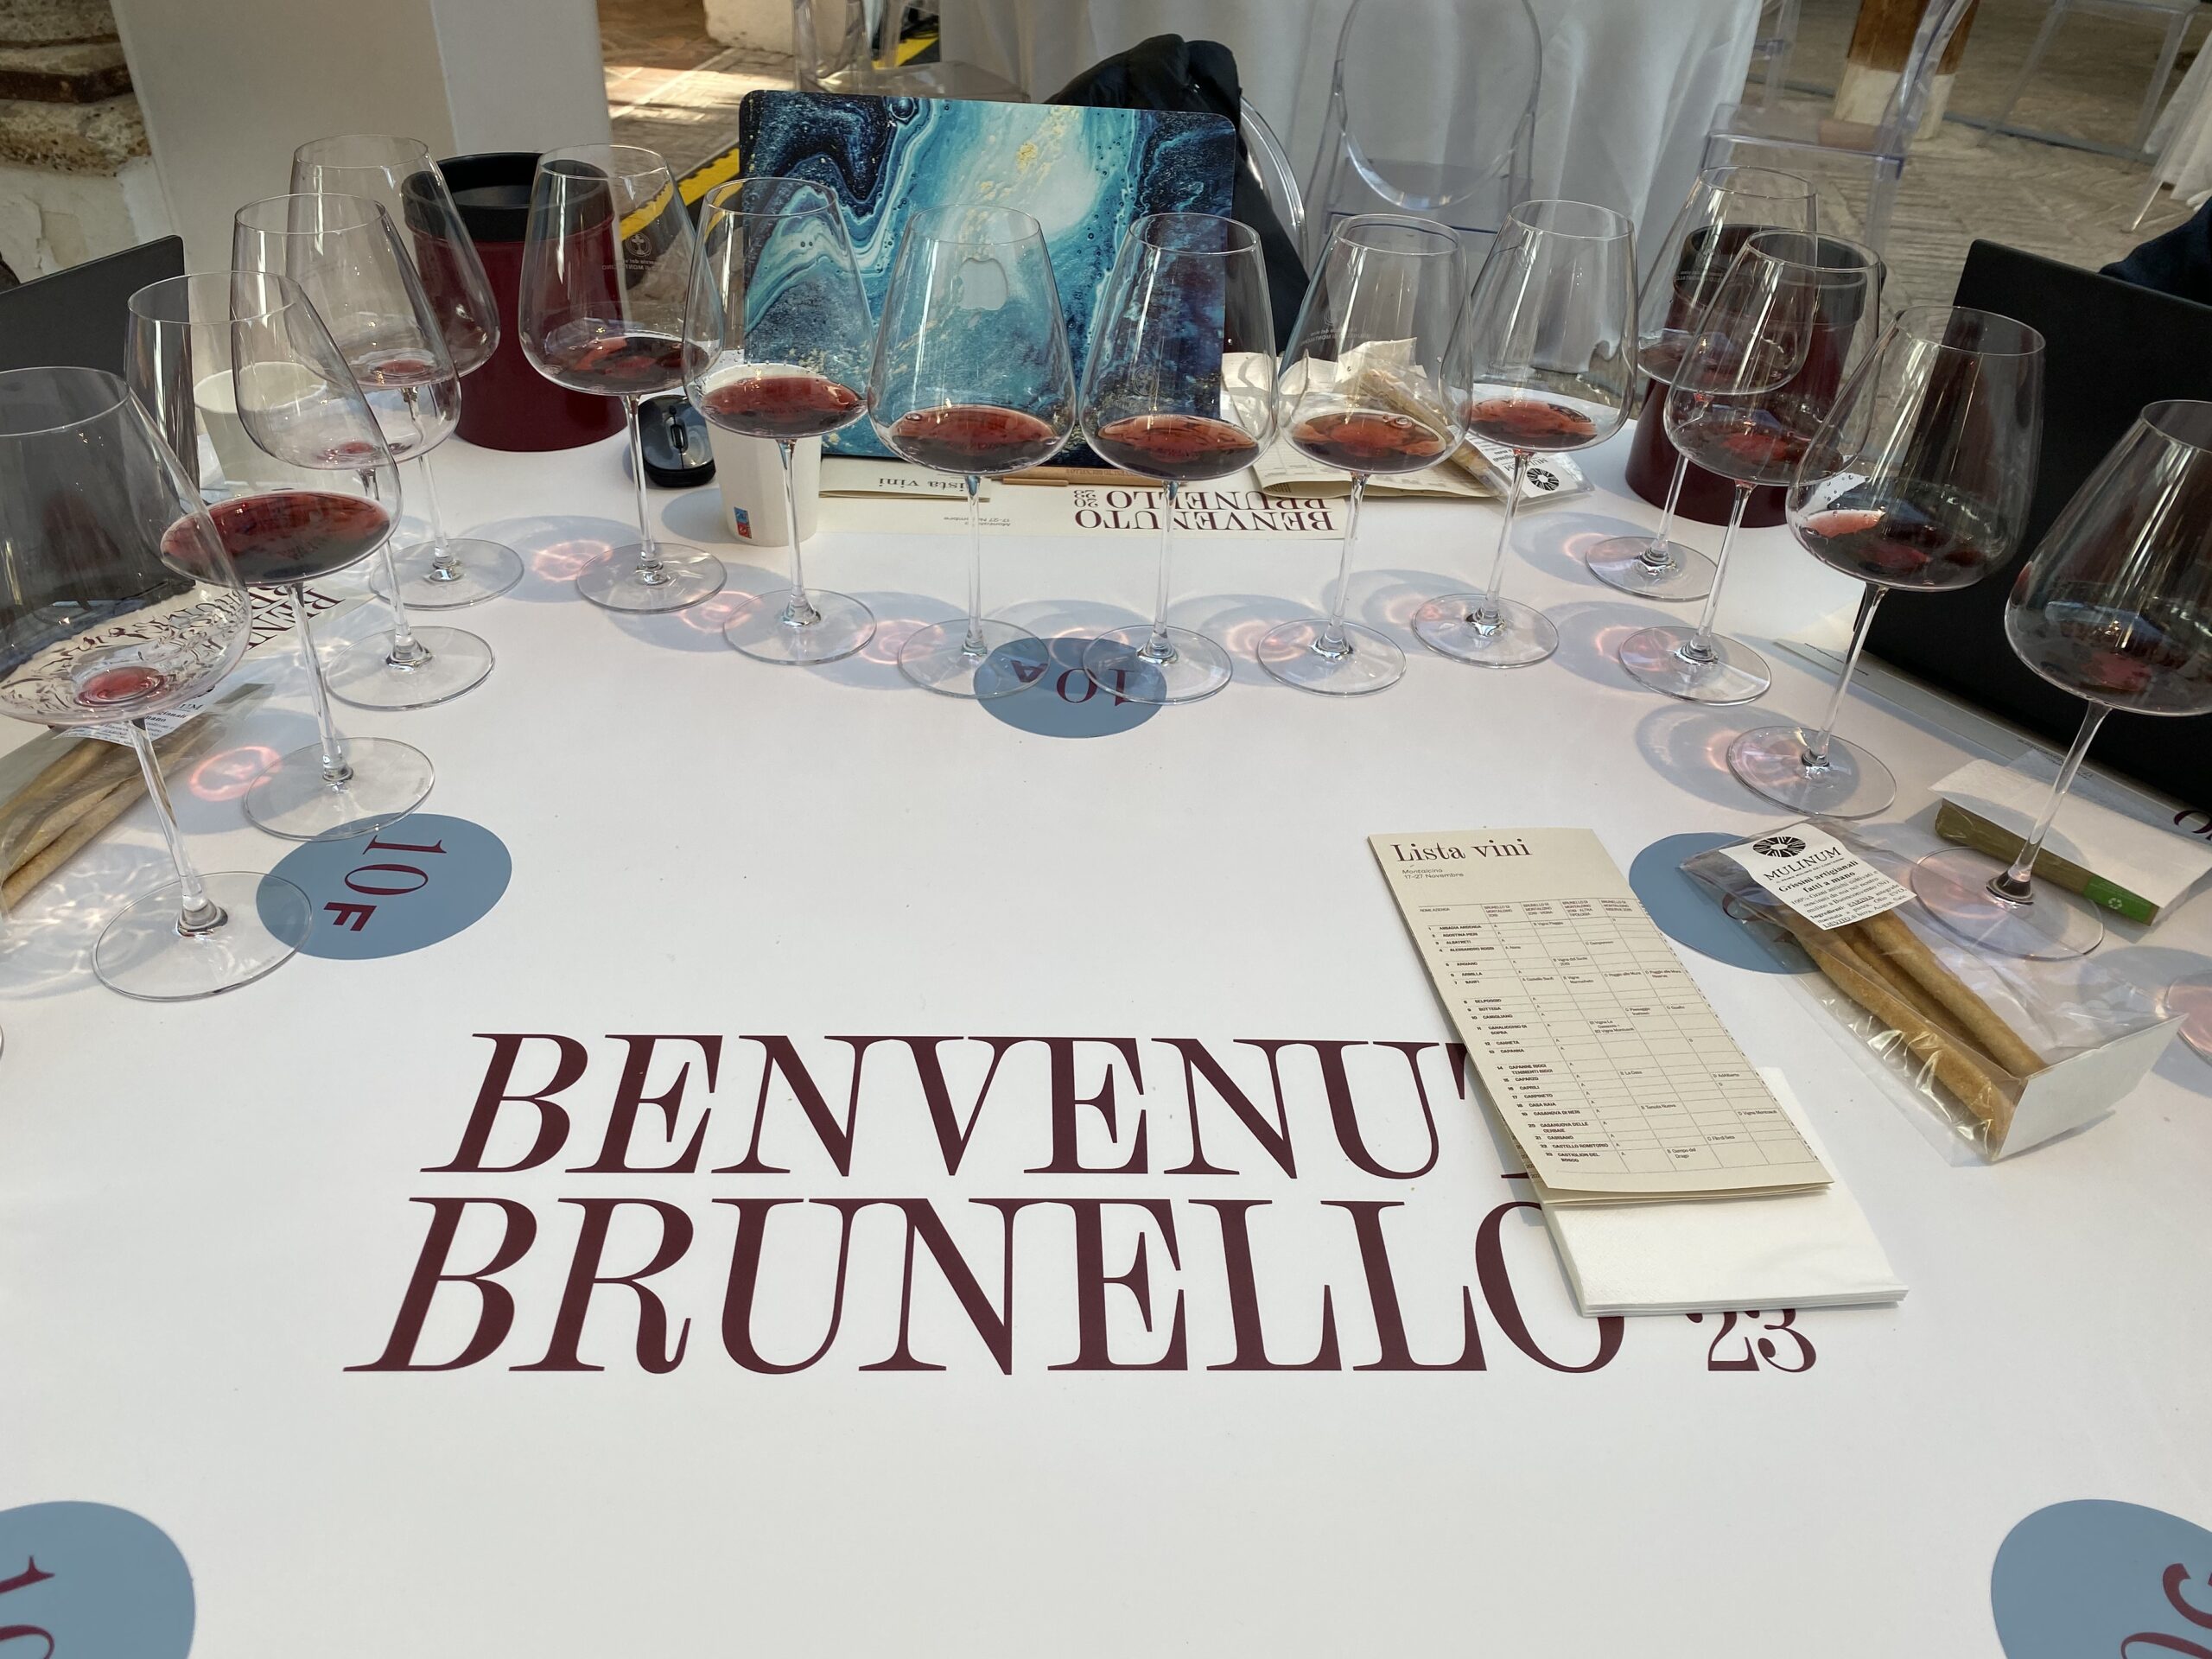 Brunello di Montalcino, in degustazione l'annata 2019